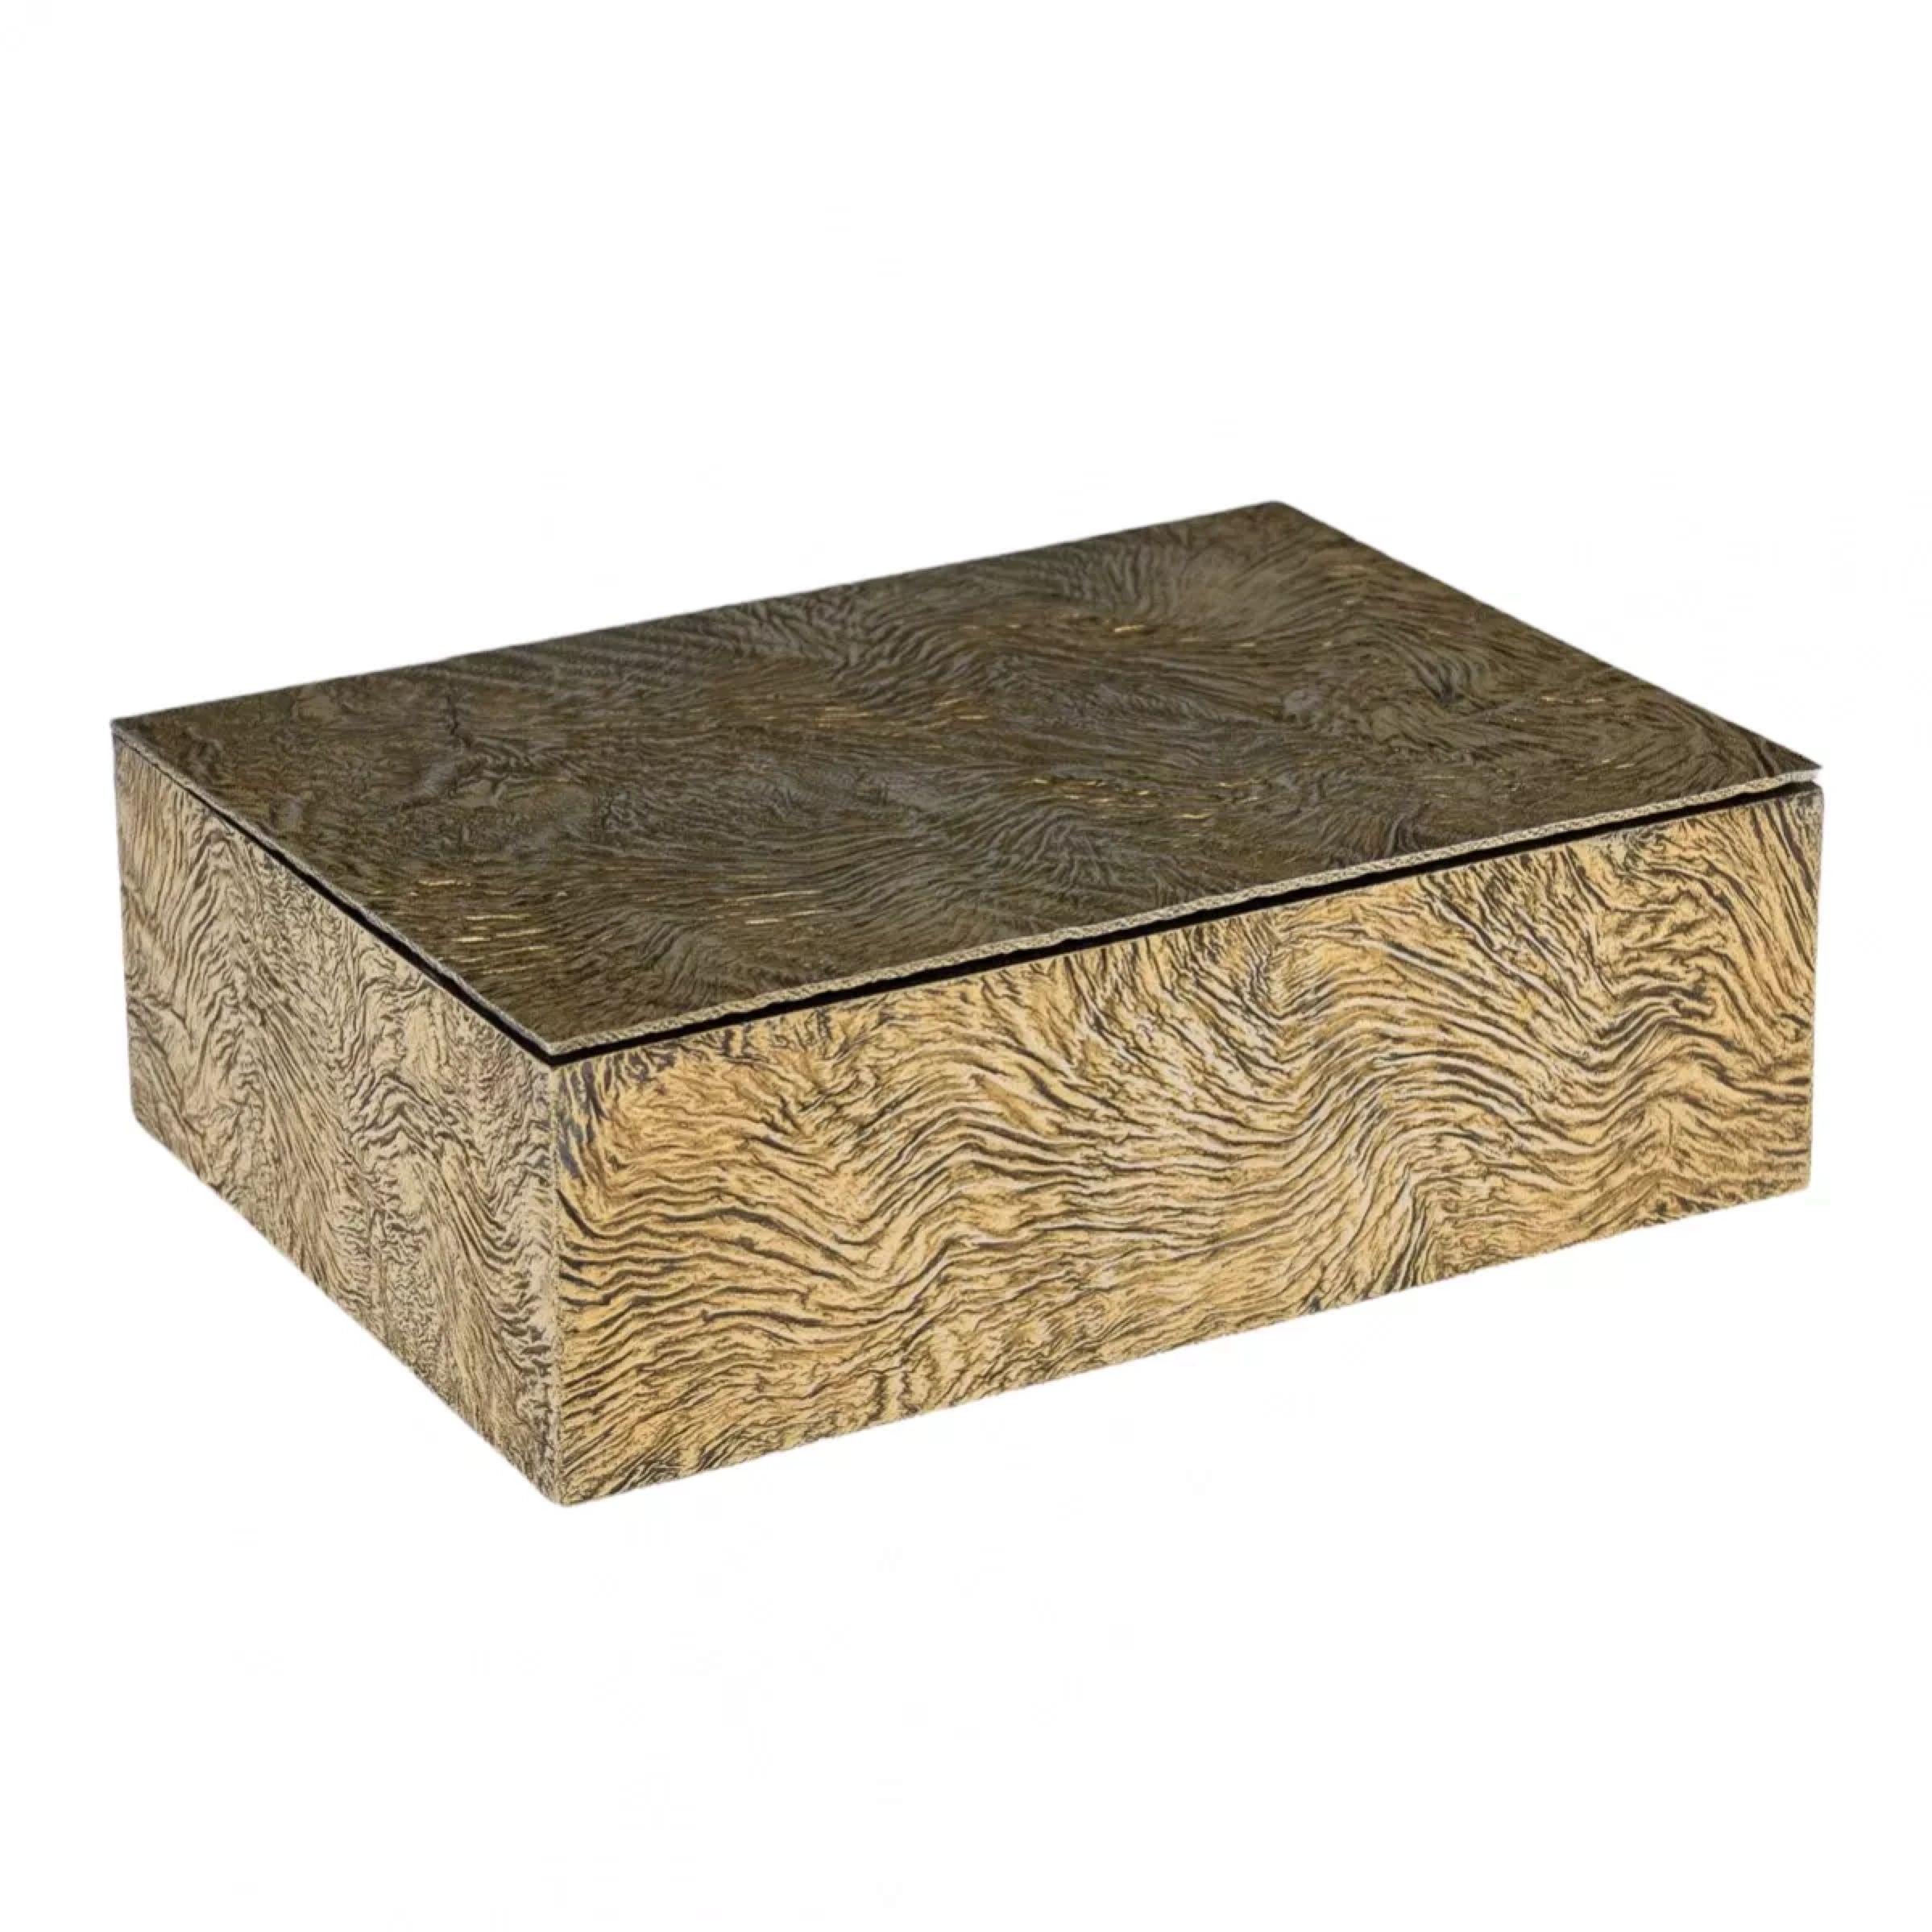 Century-Tiffany-&-Co-Silver-gilded-cigar-box-nugget-